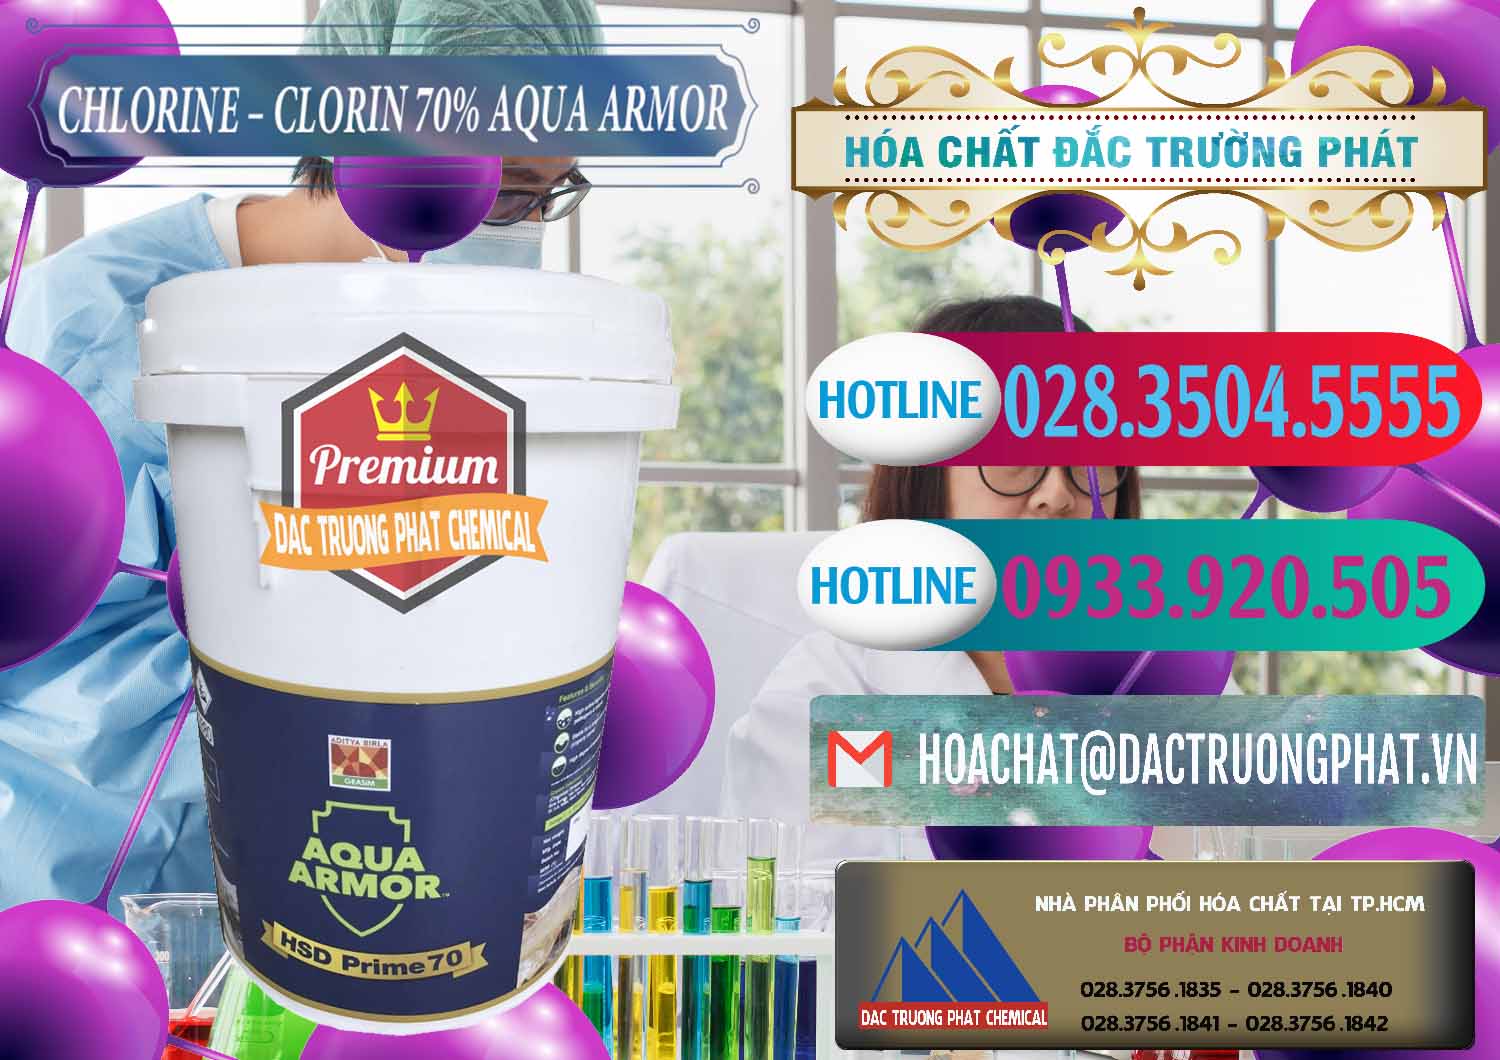 Cty chuyên bán và cung cấp Chlorine – Clorin 70% Aqua Armor Aditya Birla Grasim Ấn Độ India - 0241 - Đơn vị cung cấp và nhập khẩu hóa chất tại TP.HCM - truongphat.vn